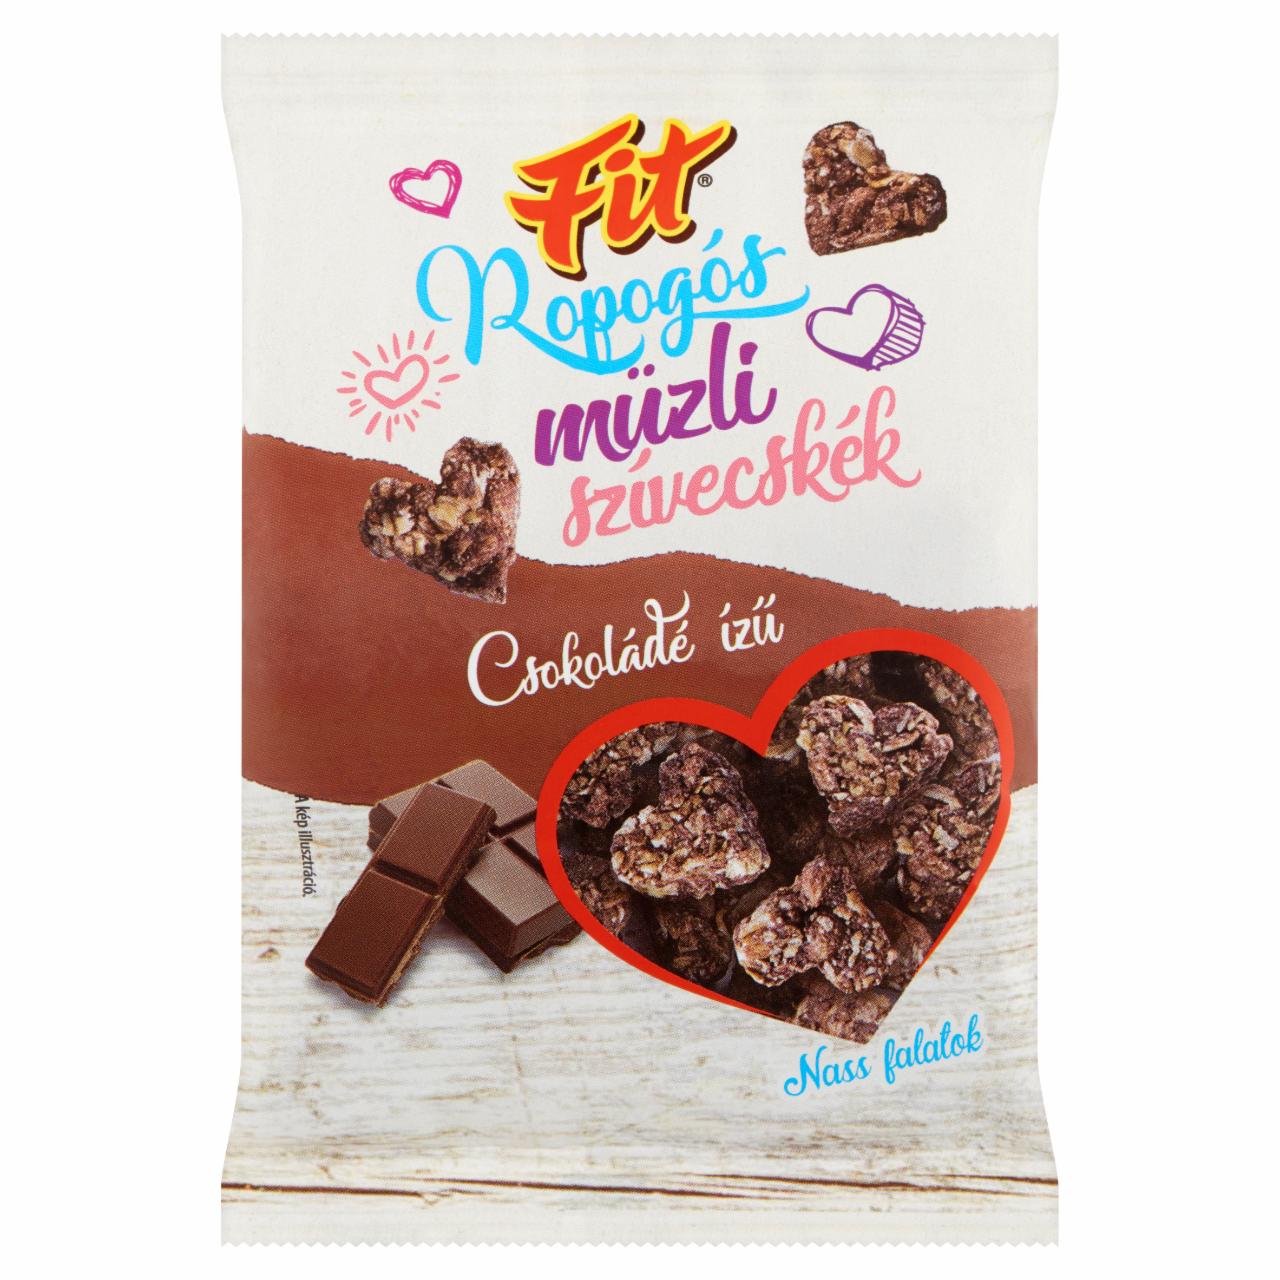 Képek - Fit csokoládé ízű ropogós müzli szívecskék 50 g